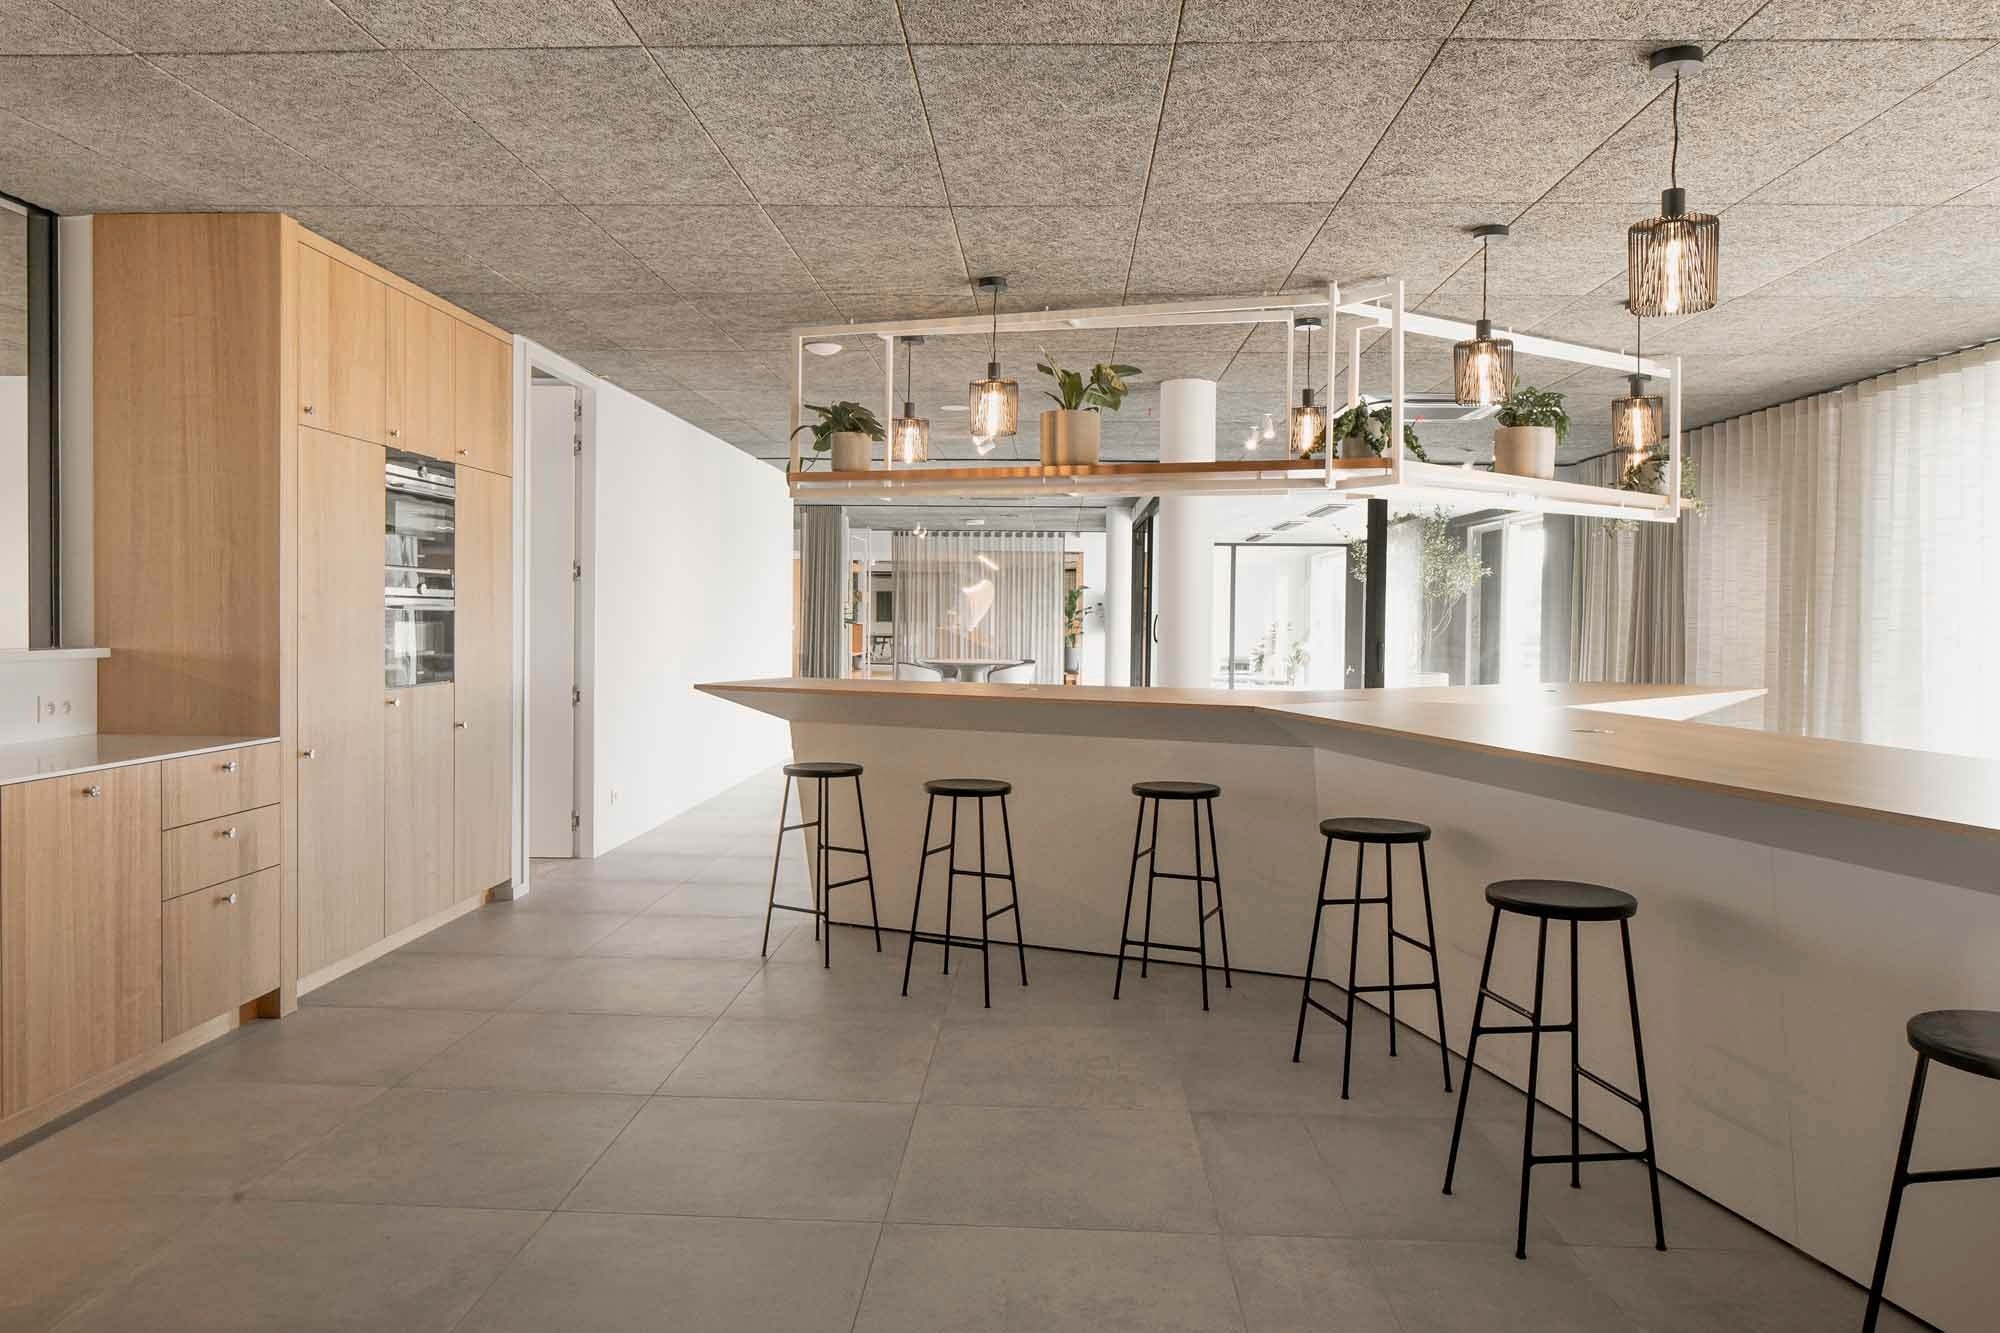 anegre wood - anegre veneer - Van Tornhaut Aalter - kitchen - veneer kitchen - kitchen bar